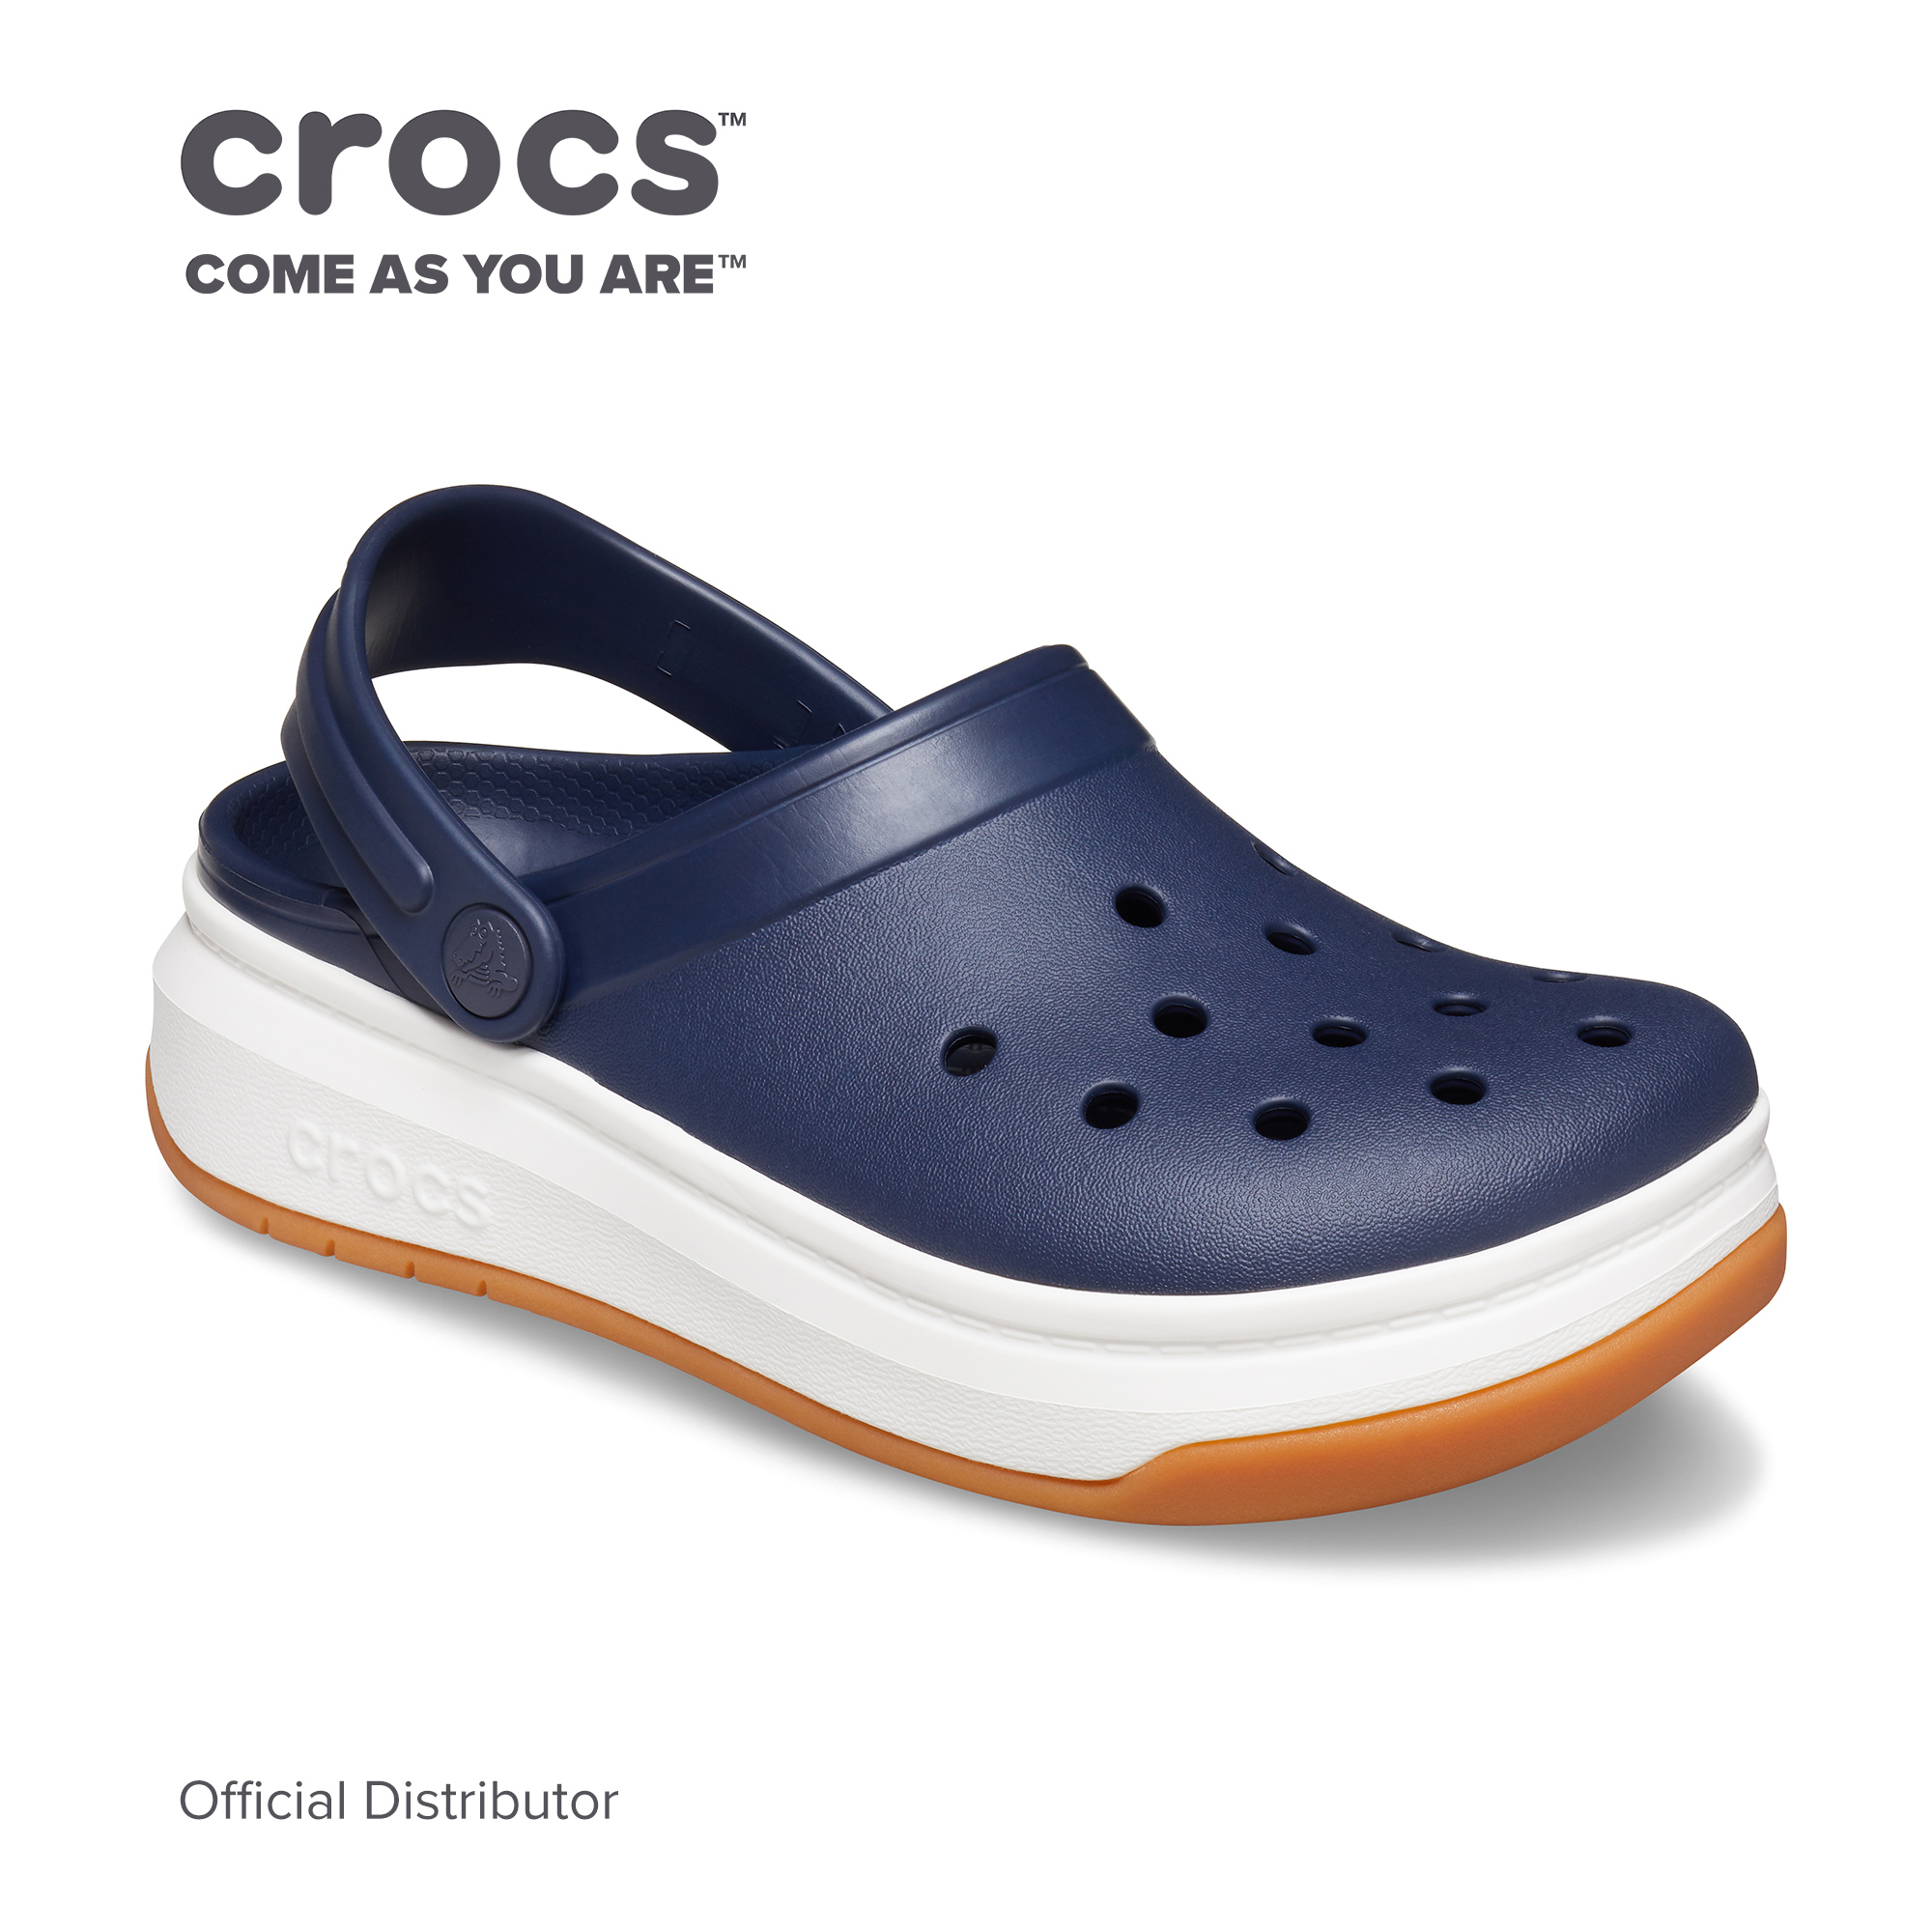 crocs sale philippines 2020